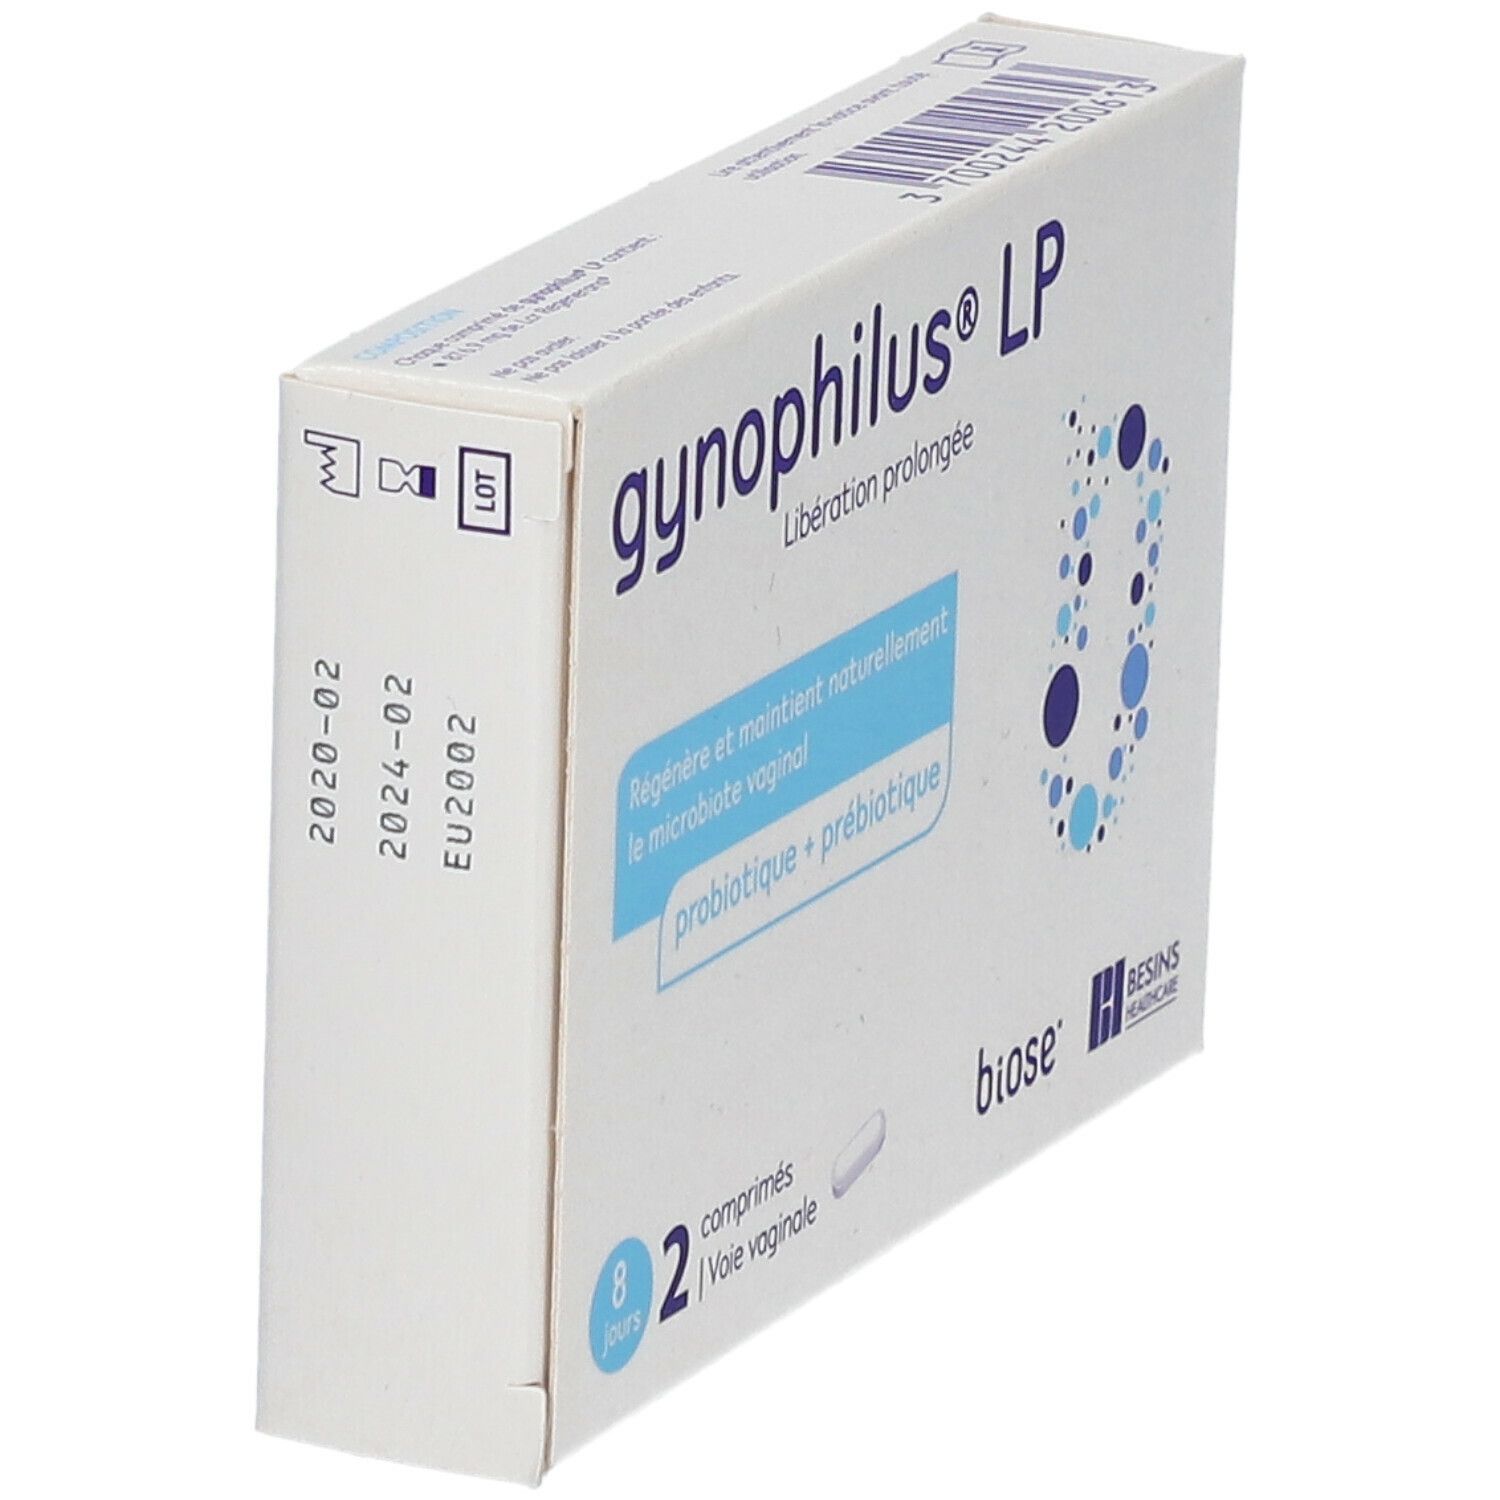 GynOphilus® LP comprimés vaginaux